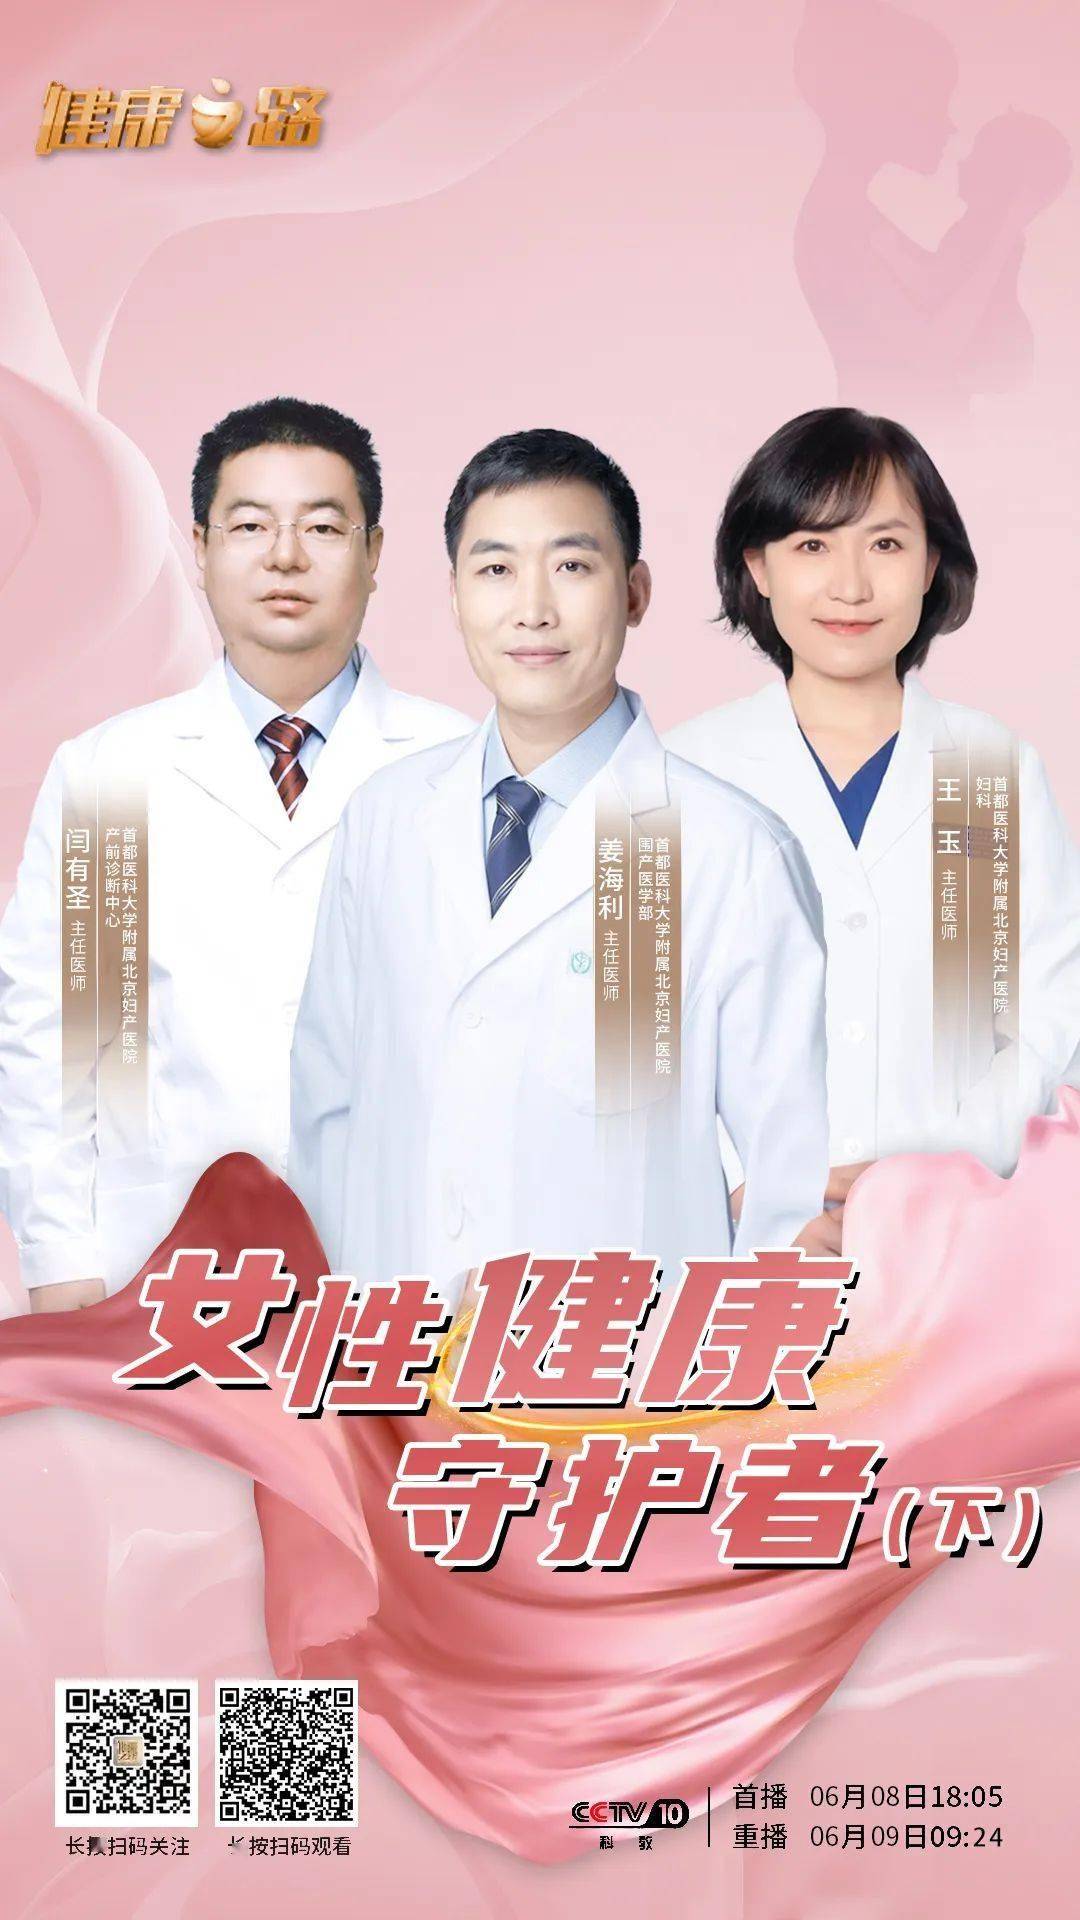 【建院65周年】cctv《健康之路》今晚18:05播出北京妇产医院专题节目